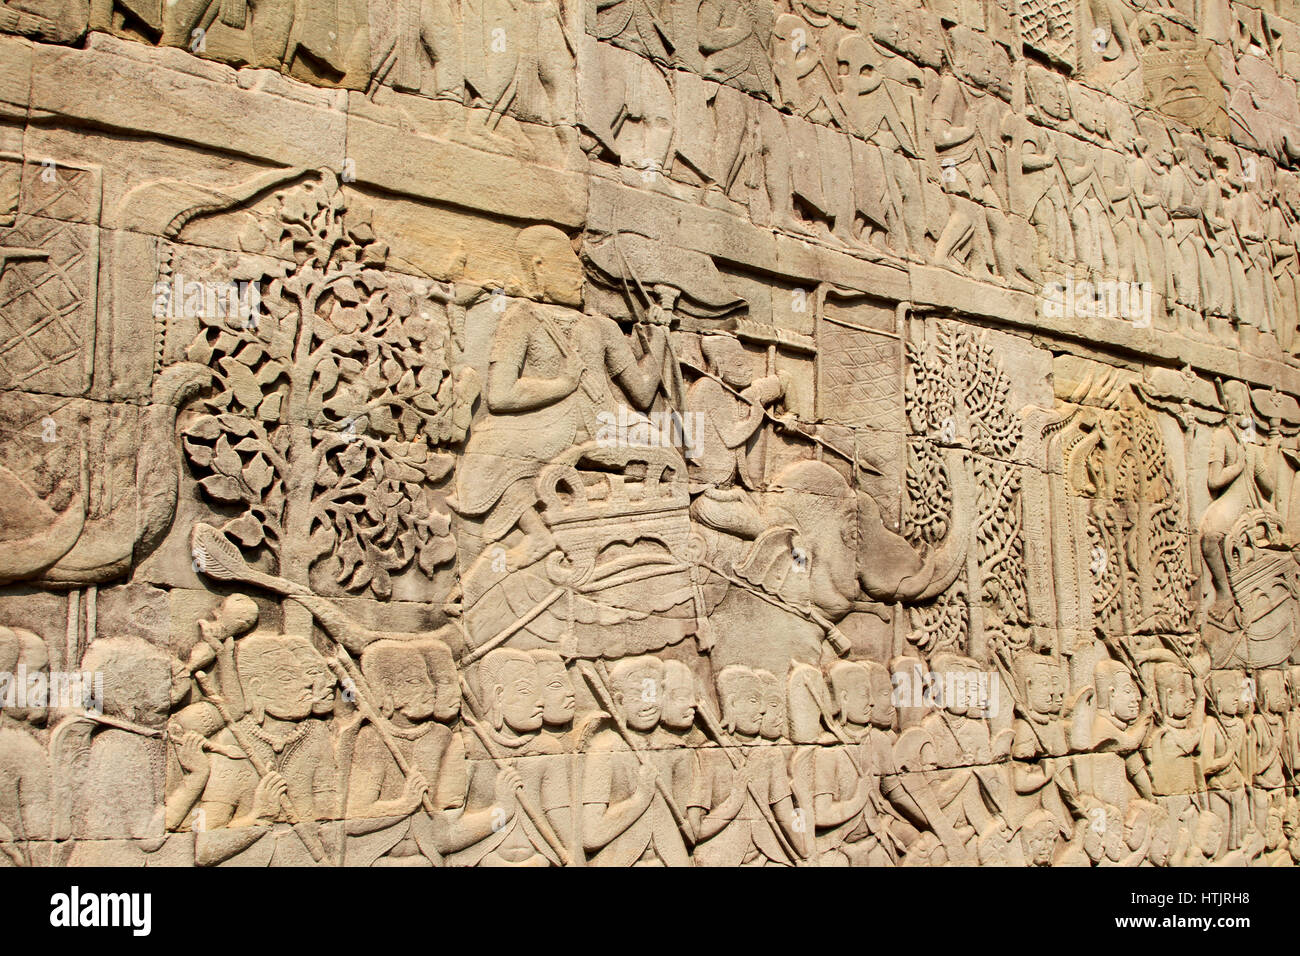 Un rilievo con gli elefanti e la guerra, scolpite nelle pareti presso il tempio Bayon in Angkor Thom, ex capitale dell Impero Khmer fuori mod Foto Stock